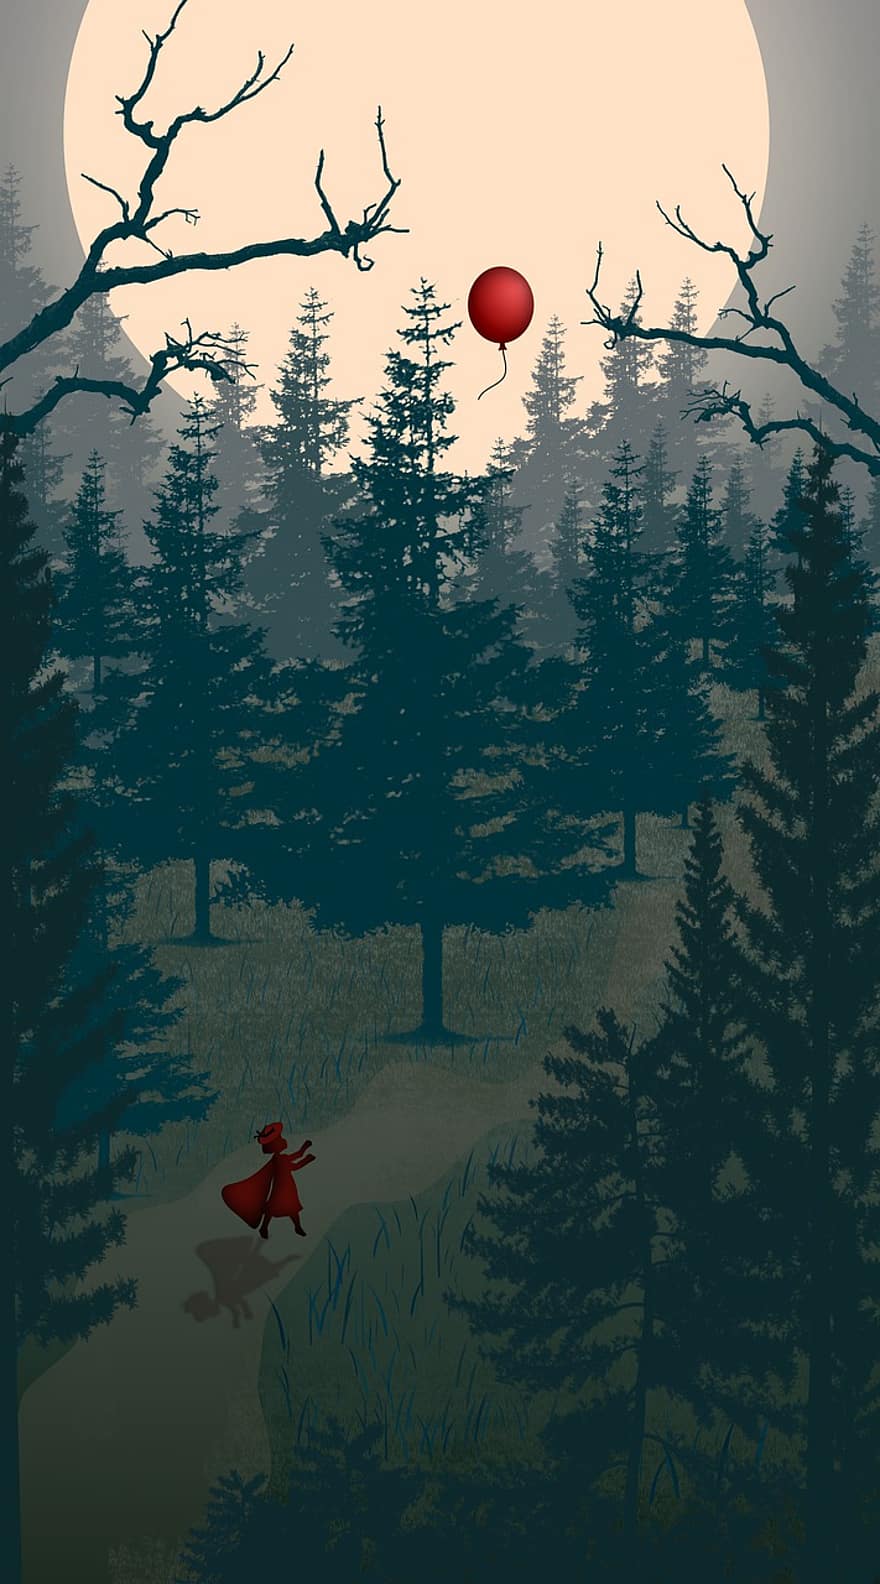 lilla Rödluvan, mörk skog, fantasi, måne, träd, röd ballong, natur, förlorat, ensam, natt, tecknad serie